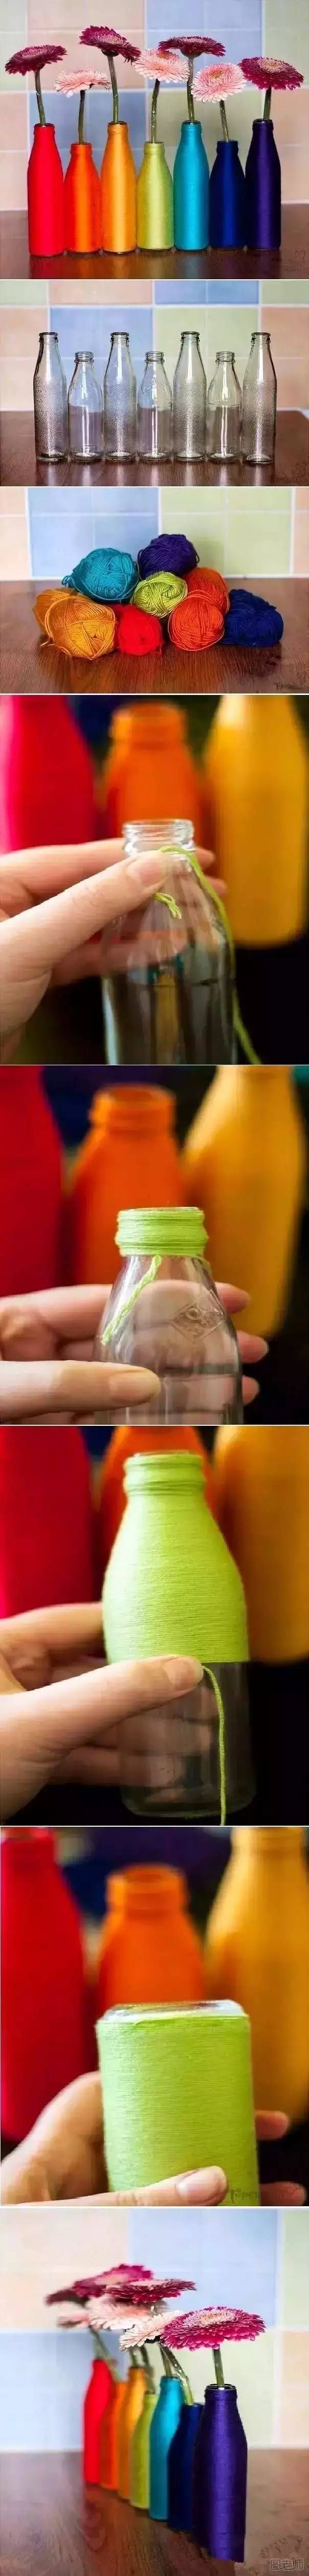 废弃的玻璃瓶旧物改造 废弃的玻璃瓶还能做什么